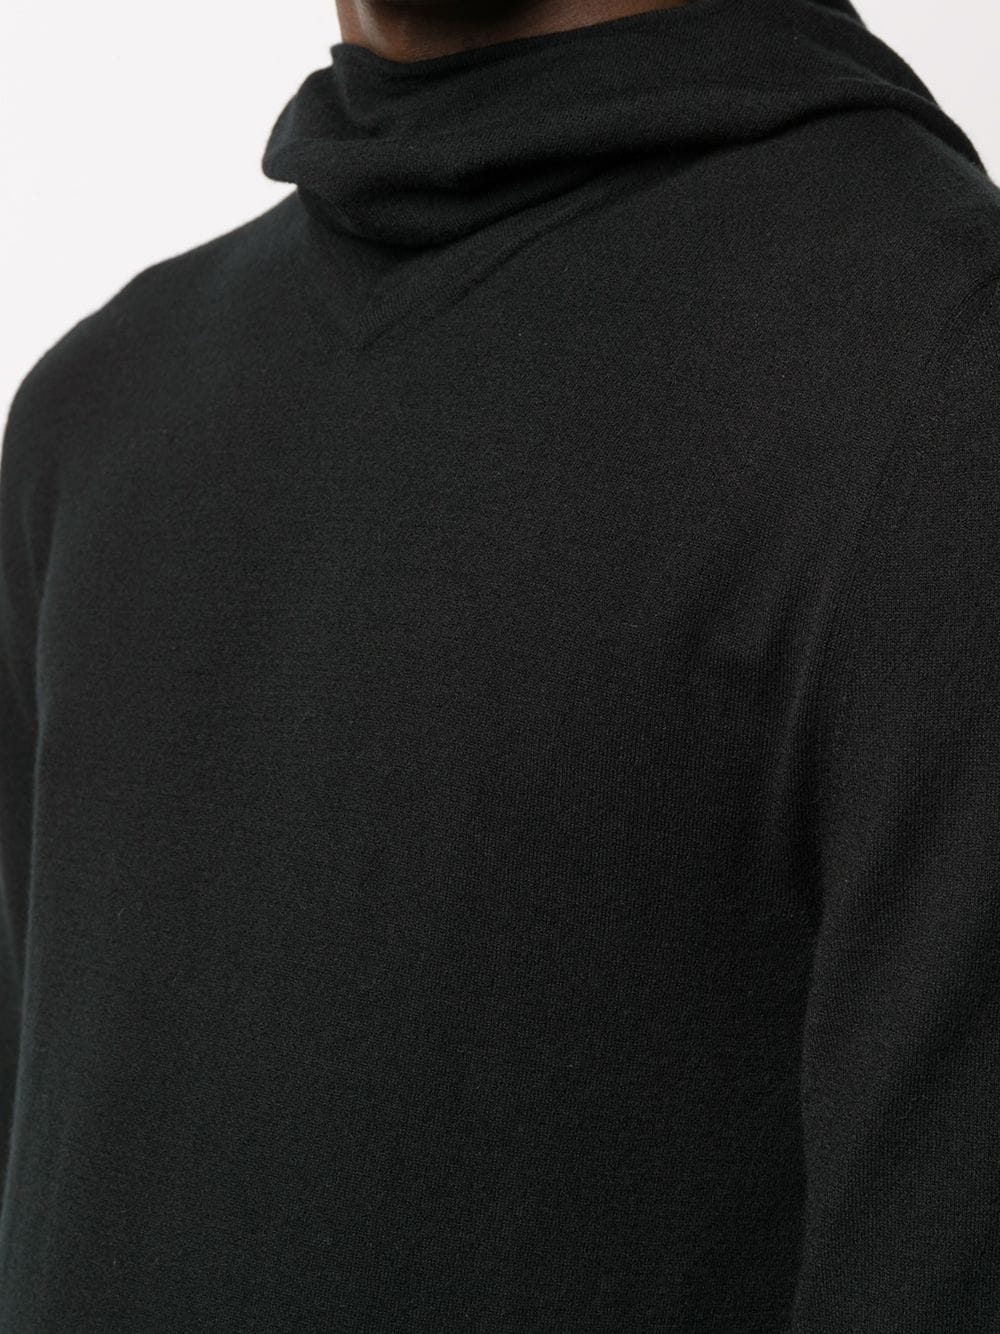 фото Bottega veneta свитер тонкой вязки с высоким воротником